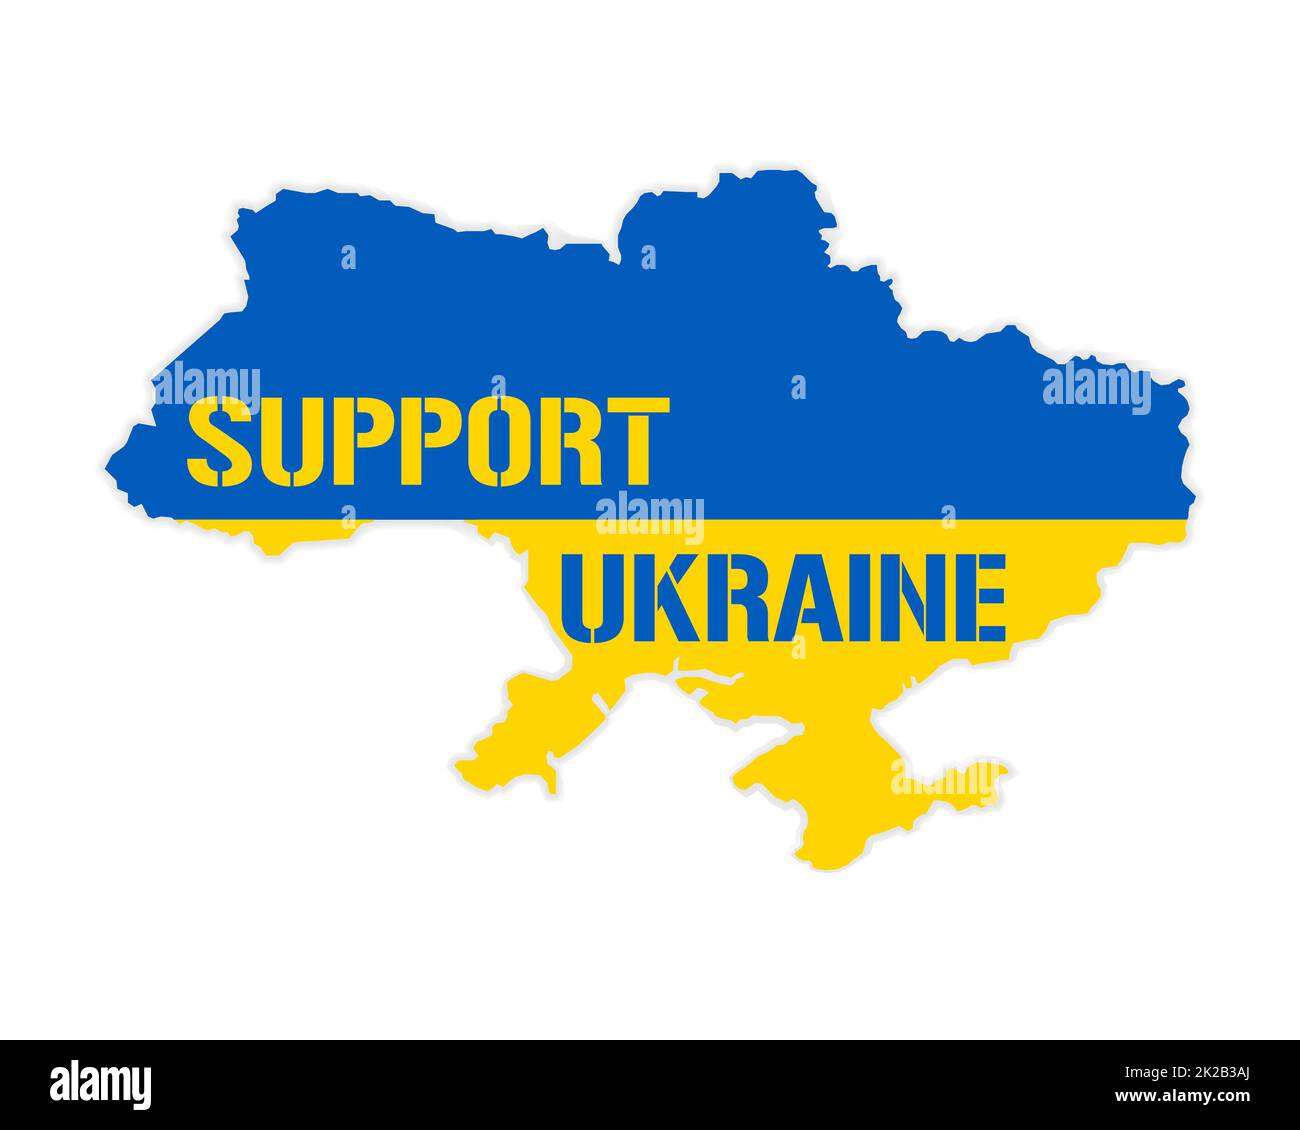 Supporto Ucraina - illustrazione vettoriale. Mappa Ucraina nei colori della bandiera nazionale. Idea concettuale blu e gialla - sostenere il paese Ucraina per il durante l'occupazione russa. Stop alla guerra. Foto Stock